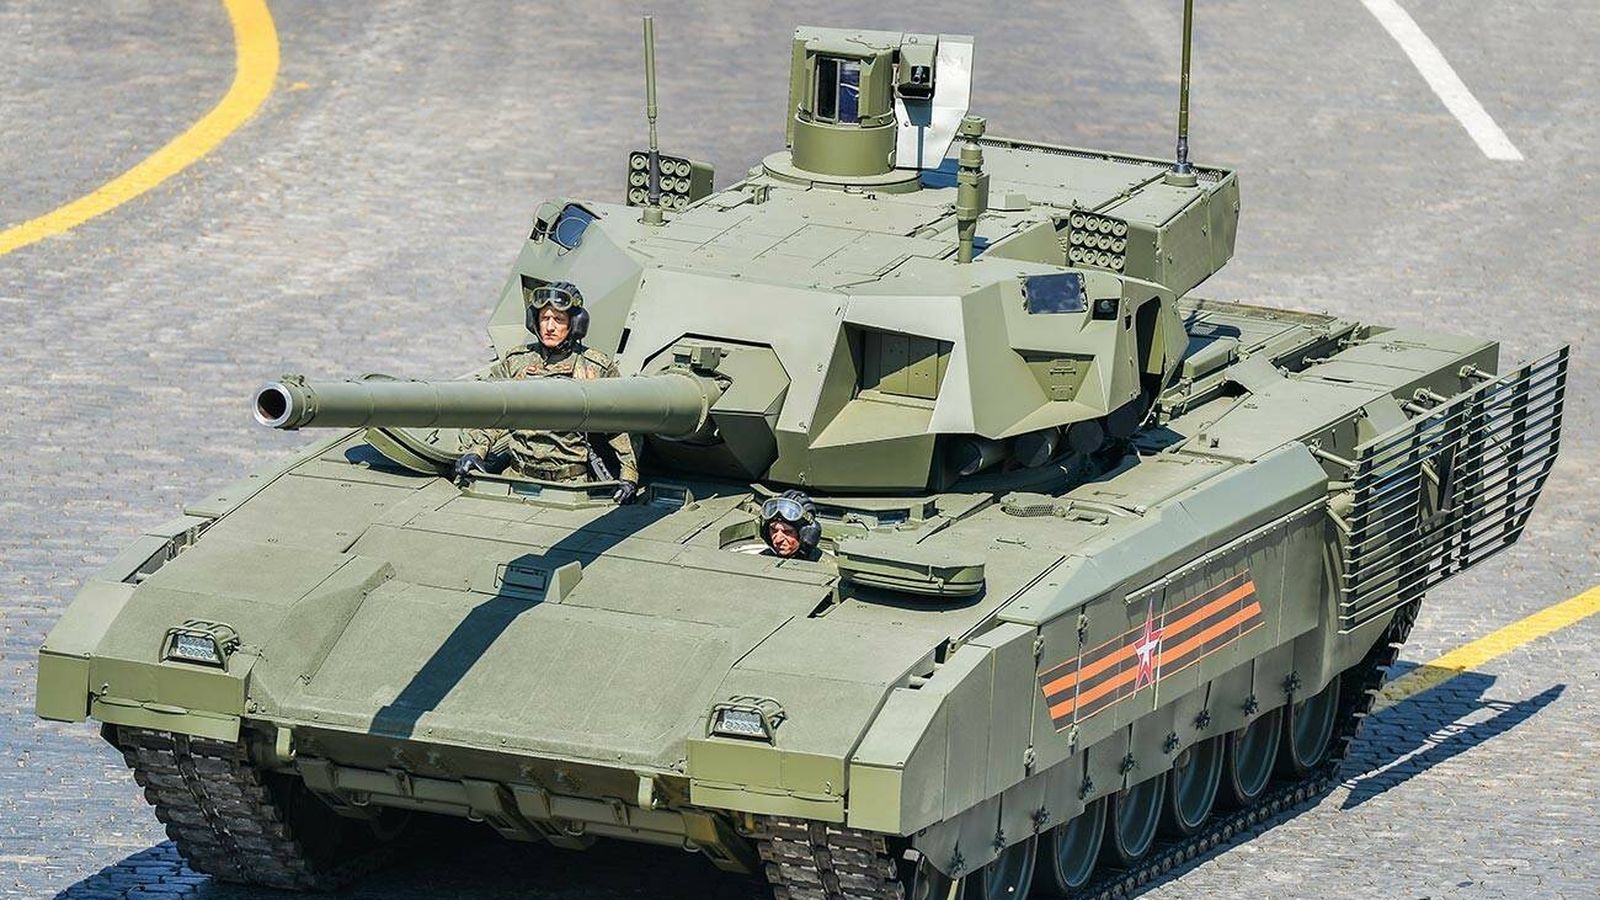  El T-14 Armata por las calles de Moscú (Vitaly V. Kuzmin)